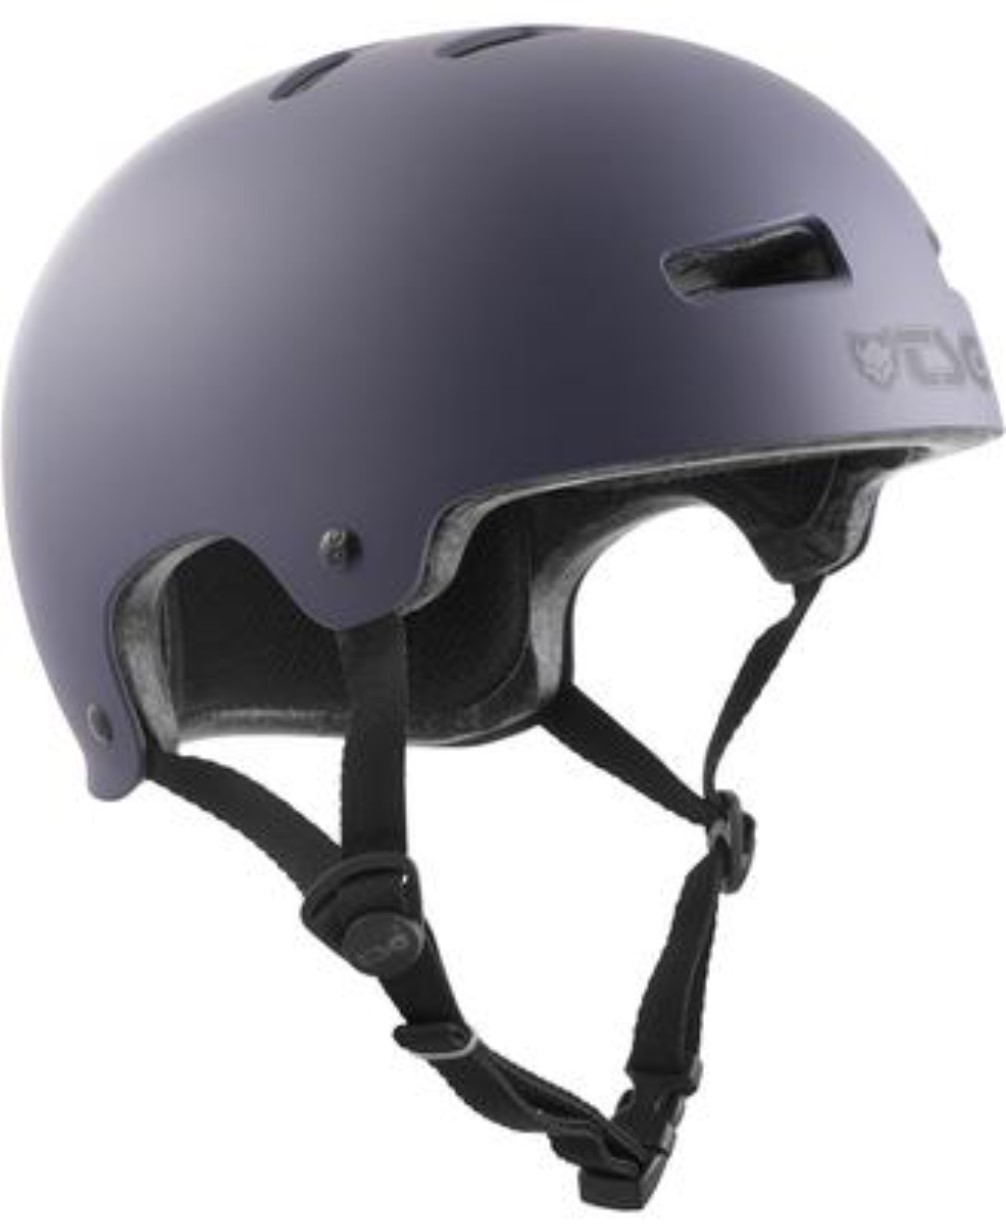 The TSG Evolution helmet in satin black for inline skating